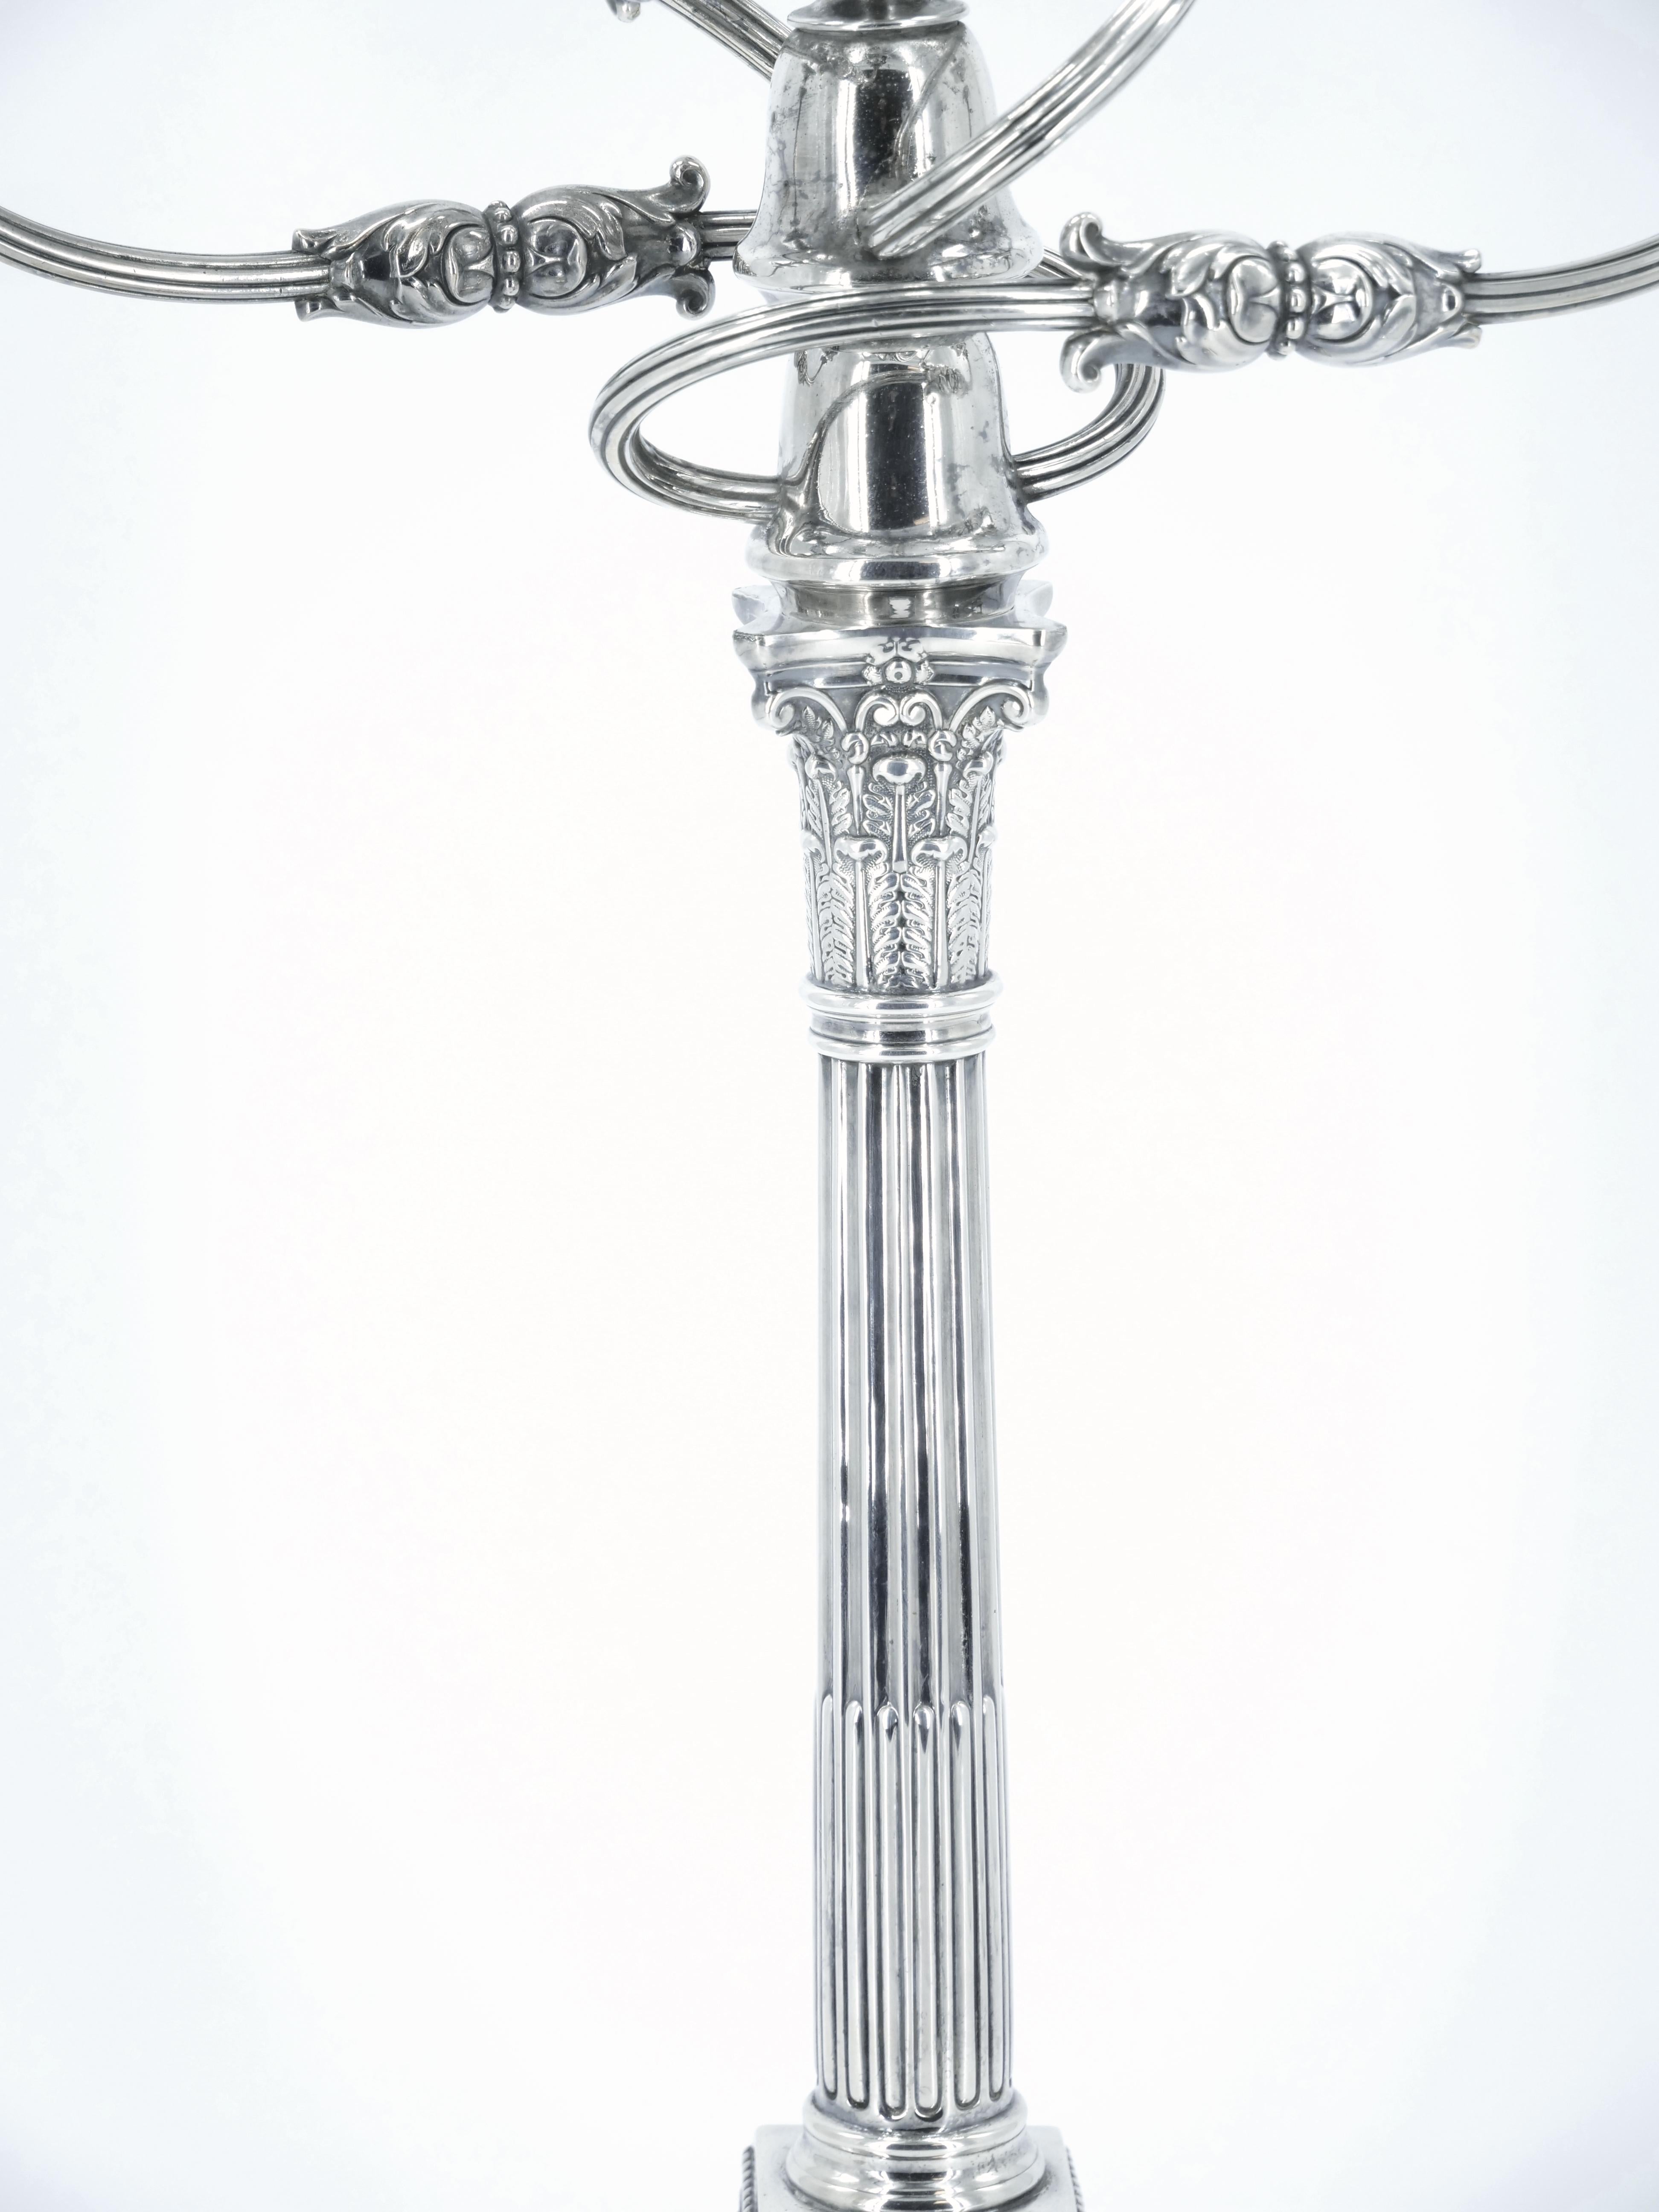 Außergewöhnlicher fünfflammiger Kandelaber aus englischem Silber von James Dixon aus dem 19. Jahrhundert mit feinem repoussiertem und ziseliertem Dekor, kanneliertem Säulenfuß und Kerzenhaltern mit korinthischen Kapitellen.  Kann in einen